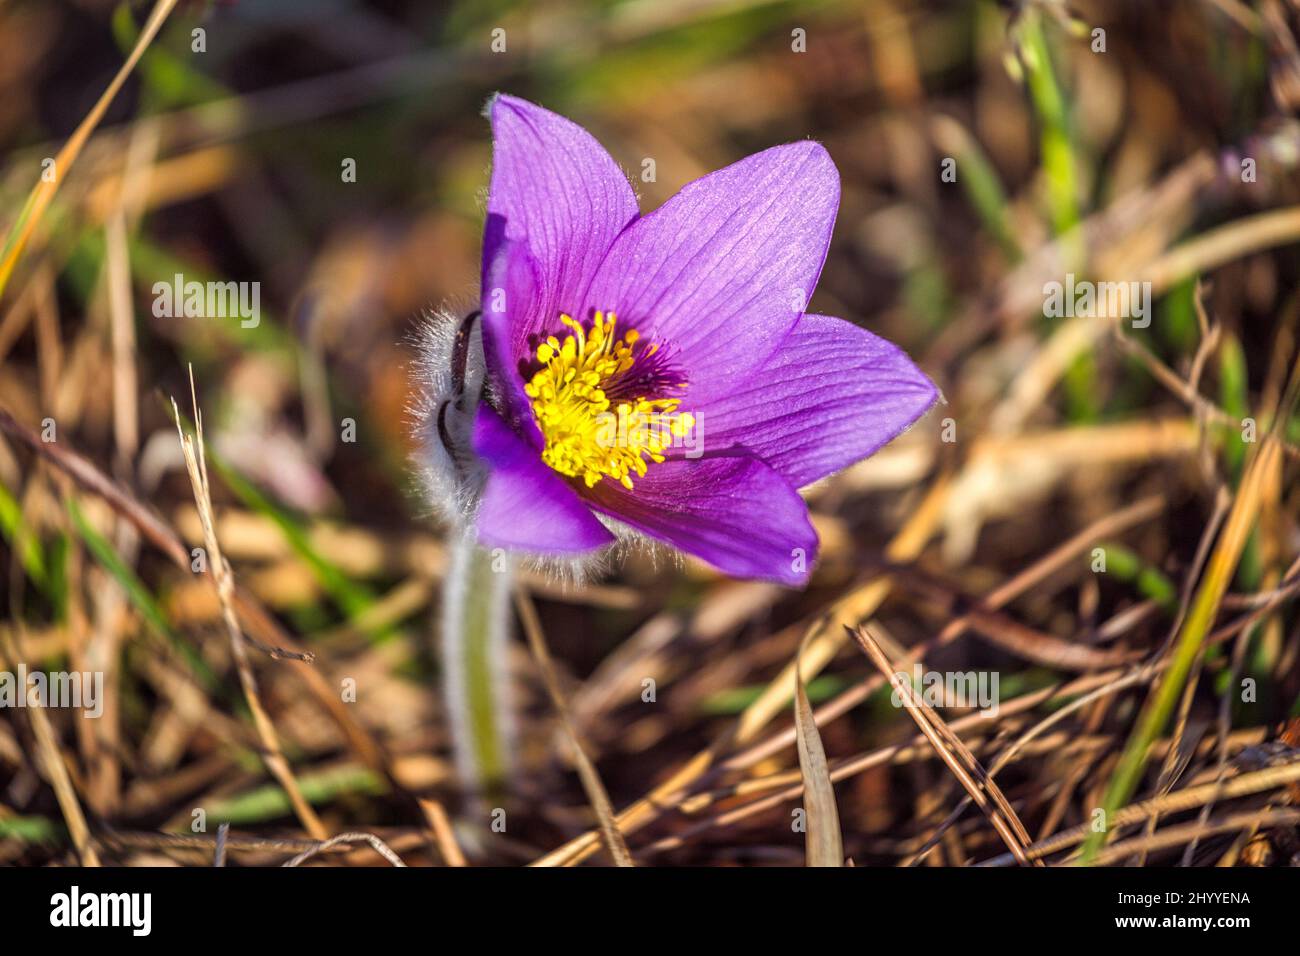 Pulsatilla grandis, die große Pasqué-Blume. Lila Blume auf einem verschwommenen Hintergrund im Frühling. Stockfoto